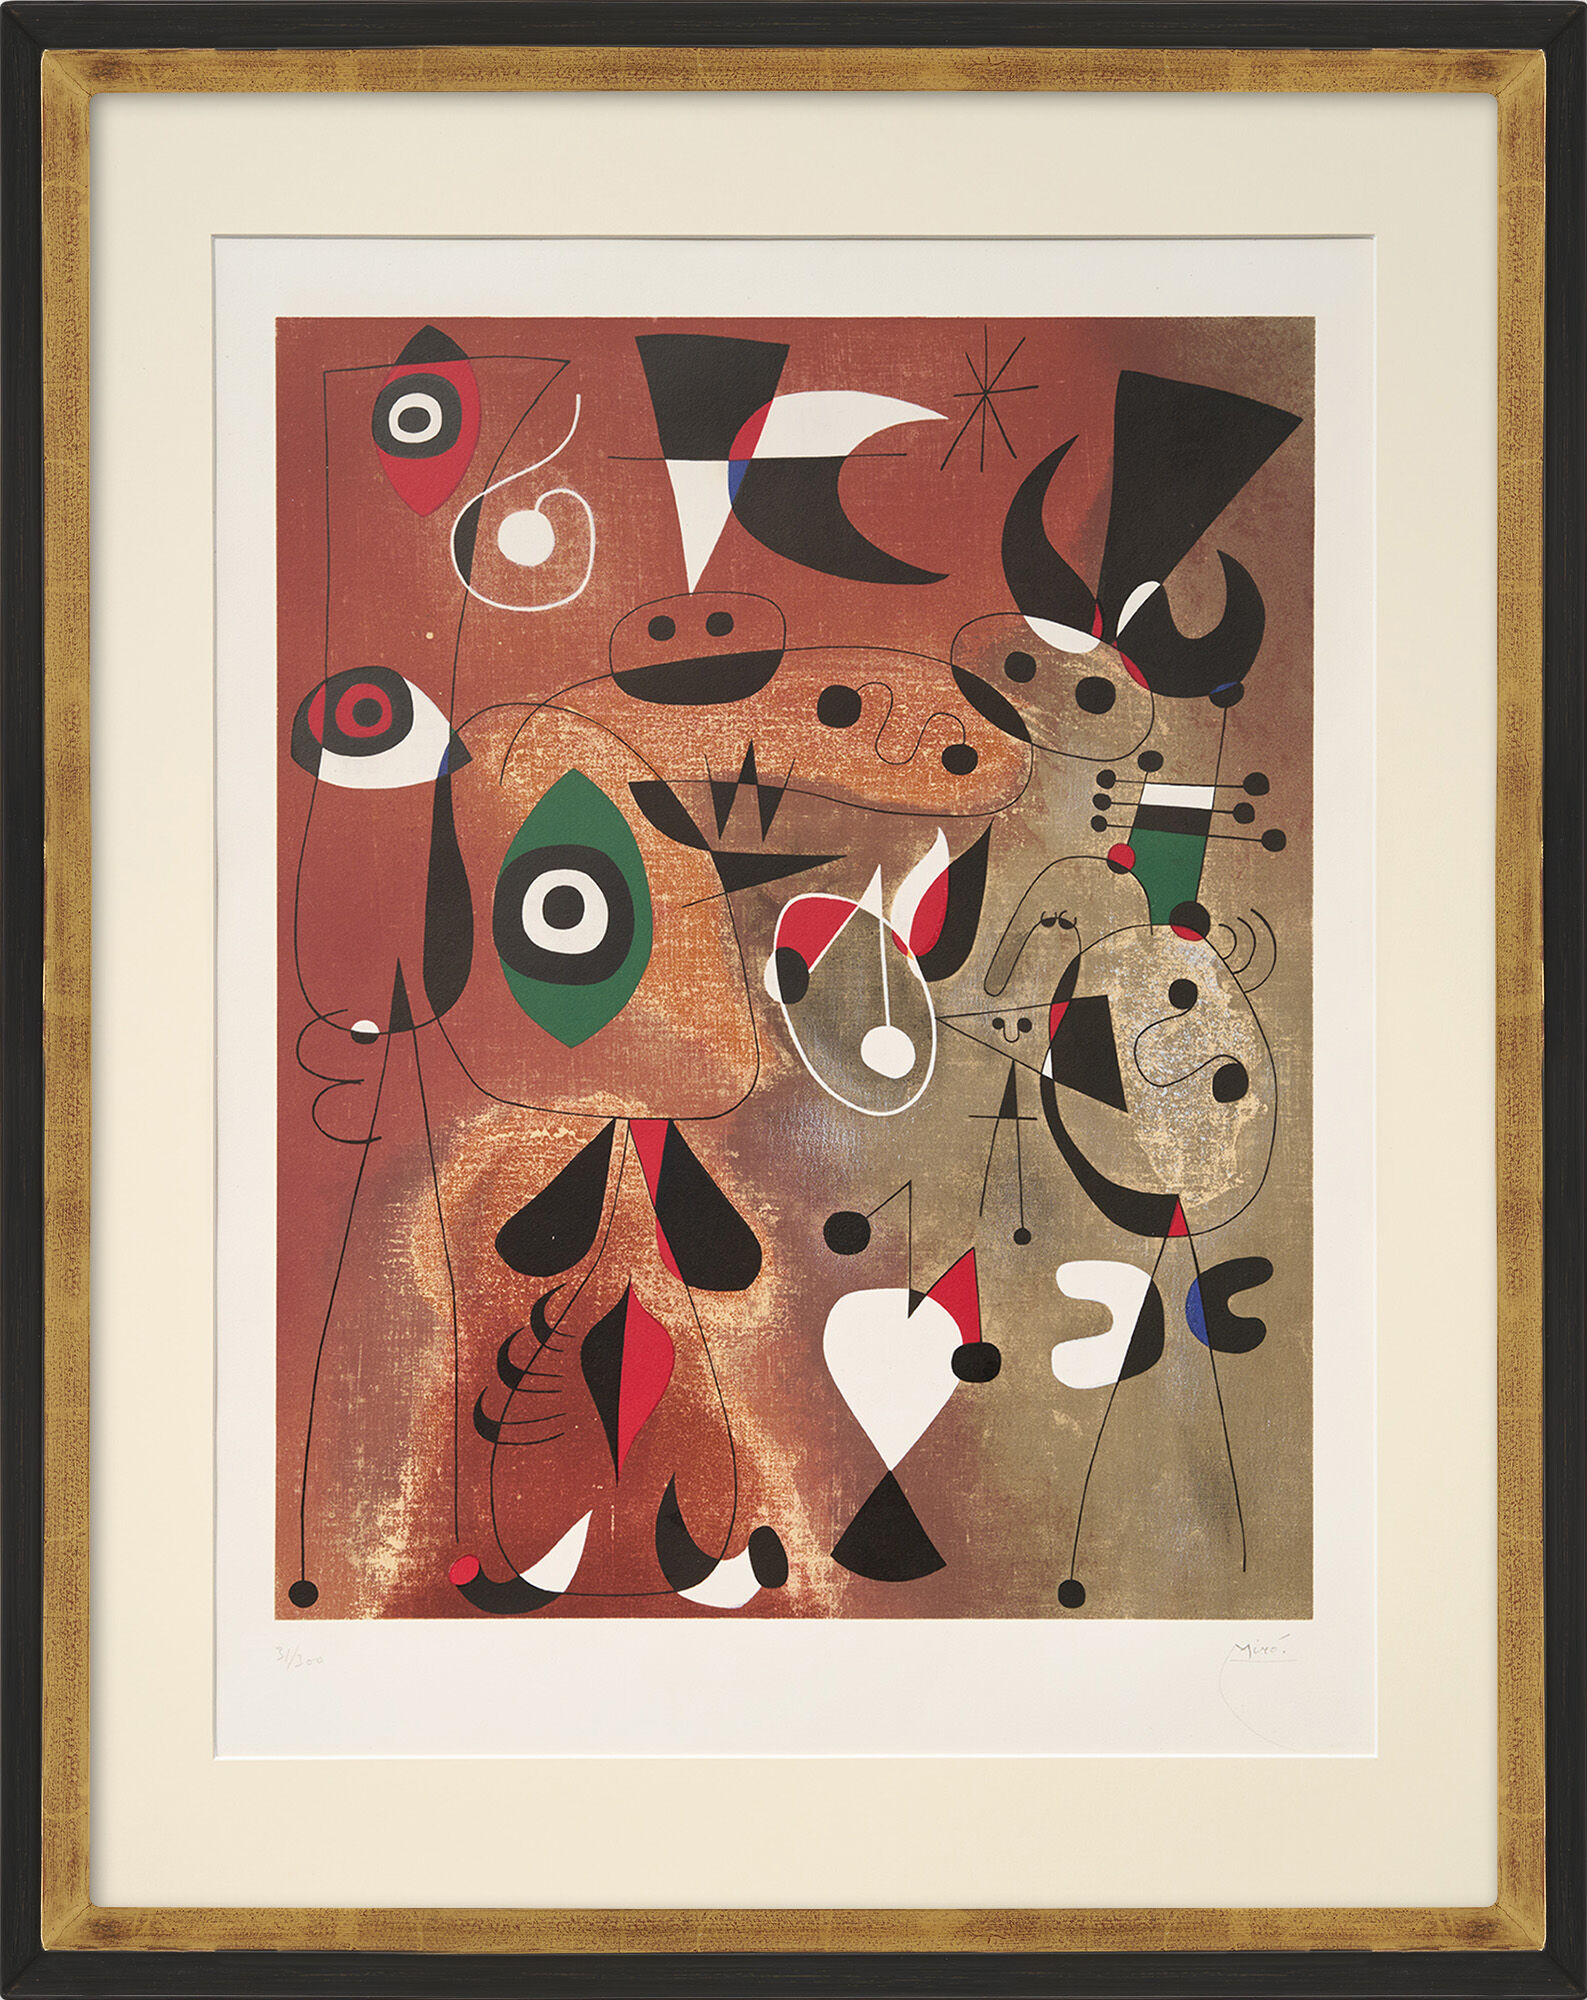 Tableau "Femme, oiseau, etoile" (1960) von Joan Miró